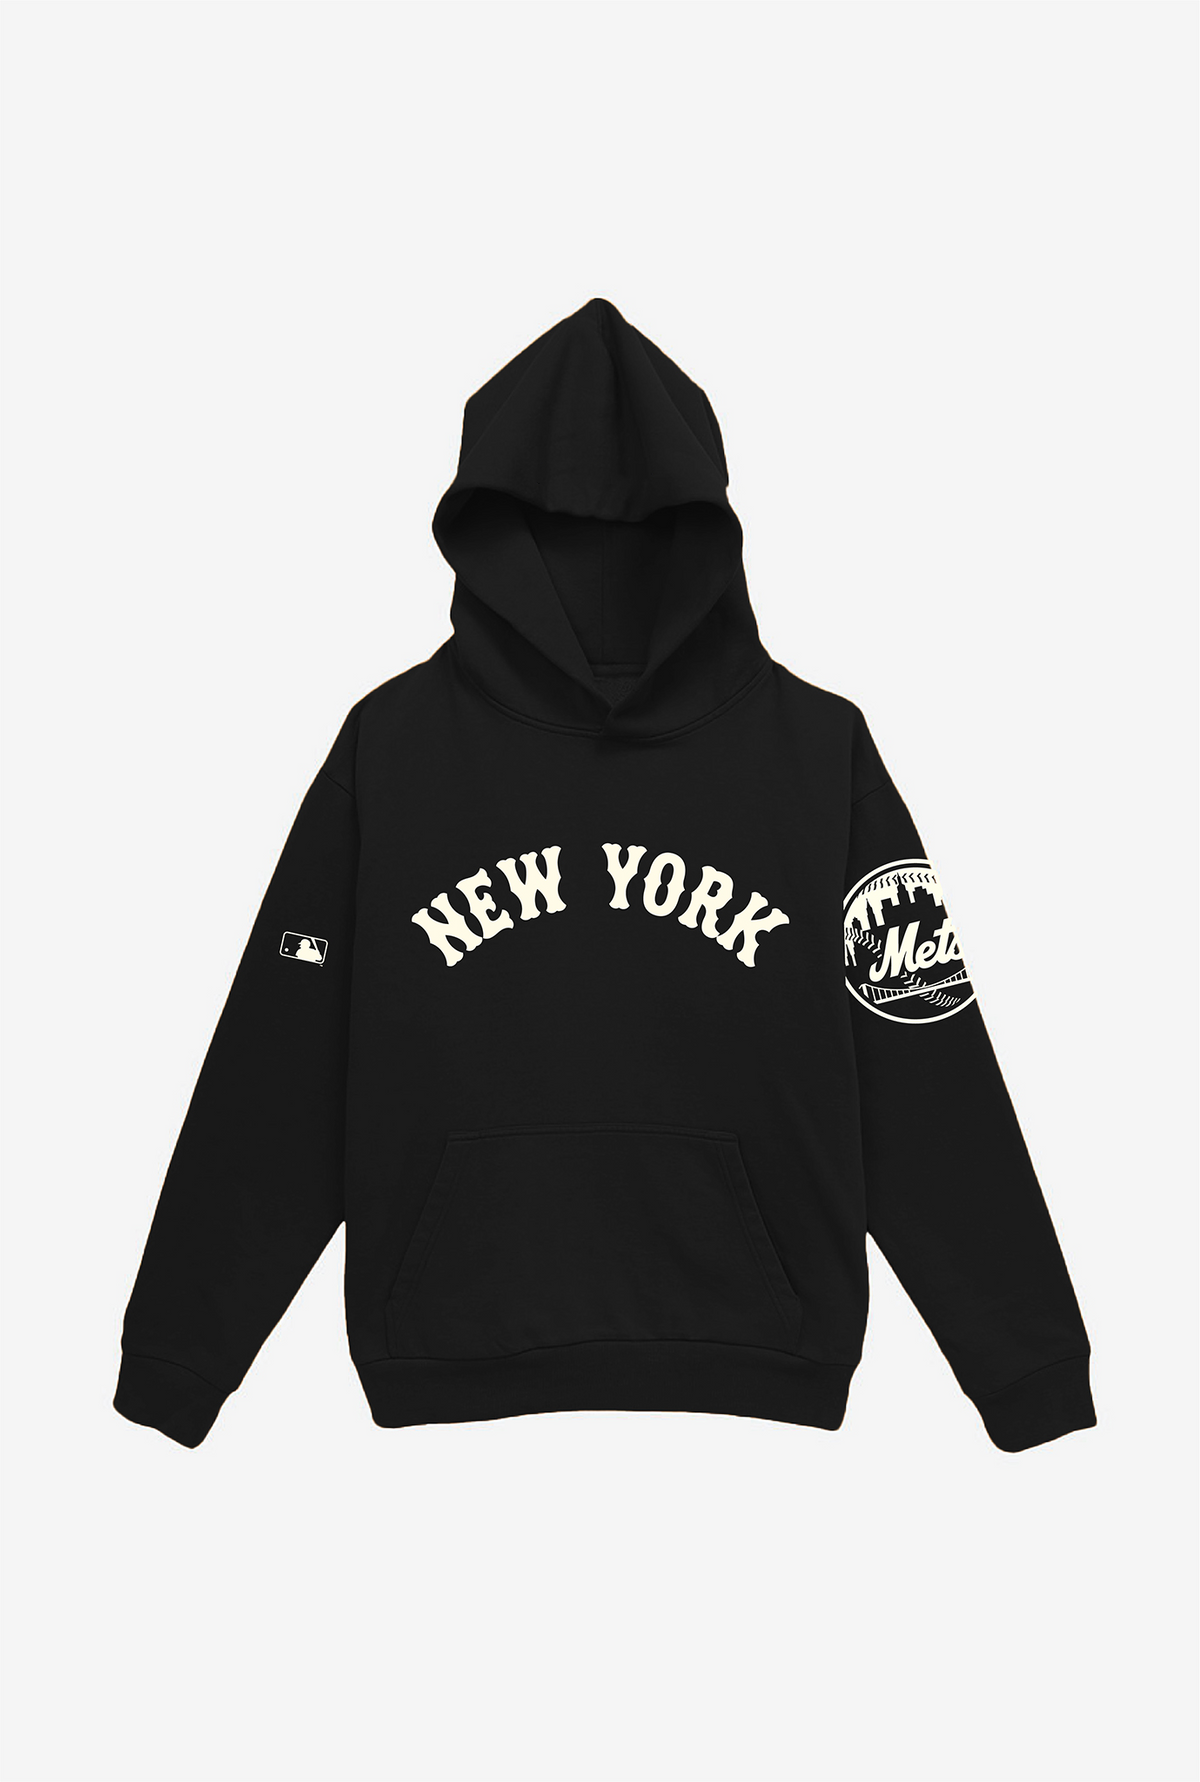 New York Mets Essential Heavyweight Hoodie - Black